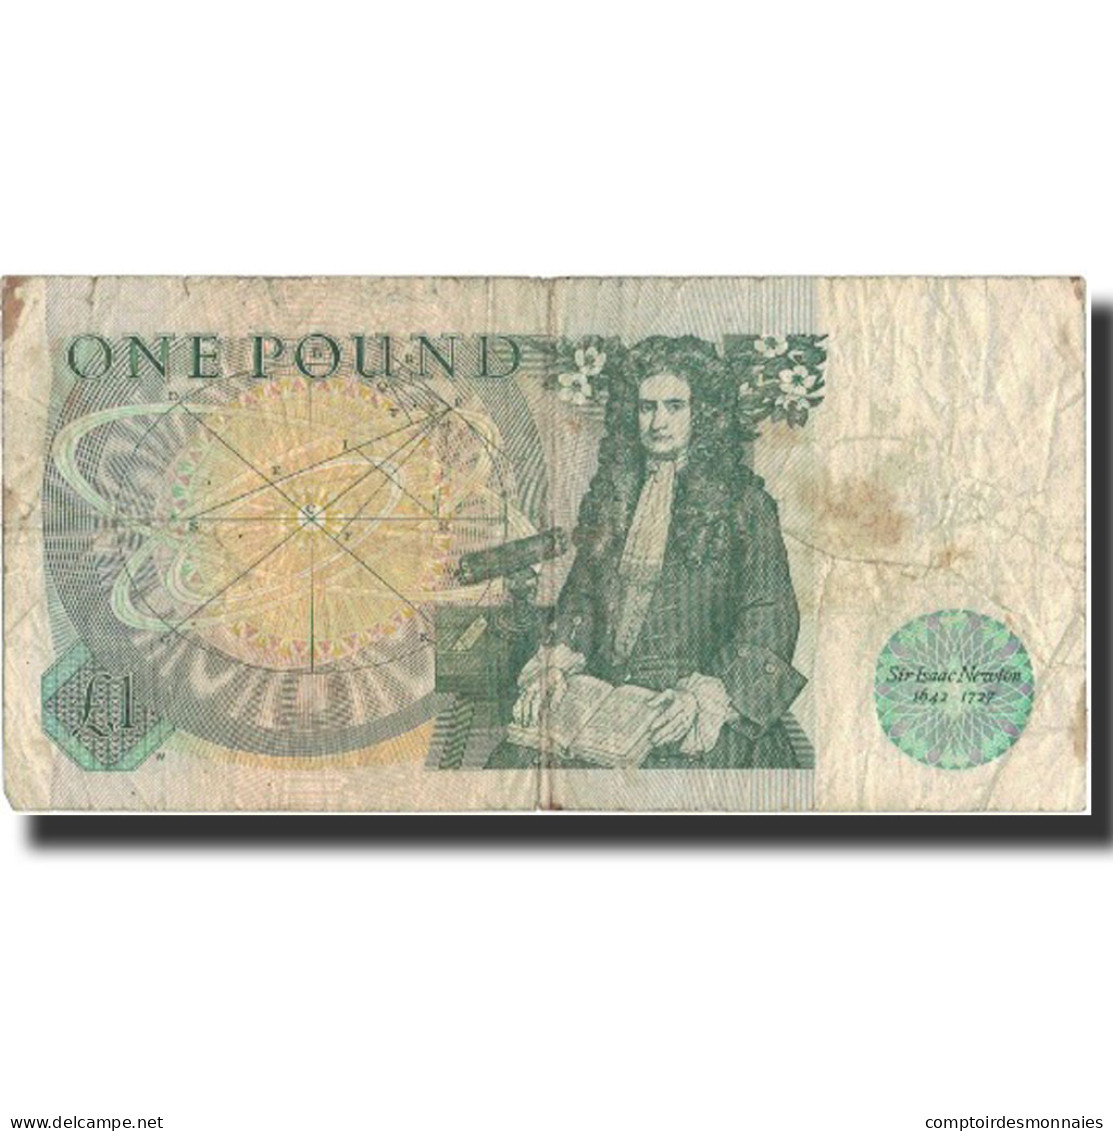 Billet, Grande-Bretagne, 1 Pound, Undated (1978-84), Undated, KM:377b, B - 1 Pound